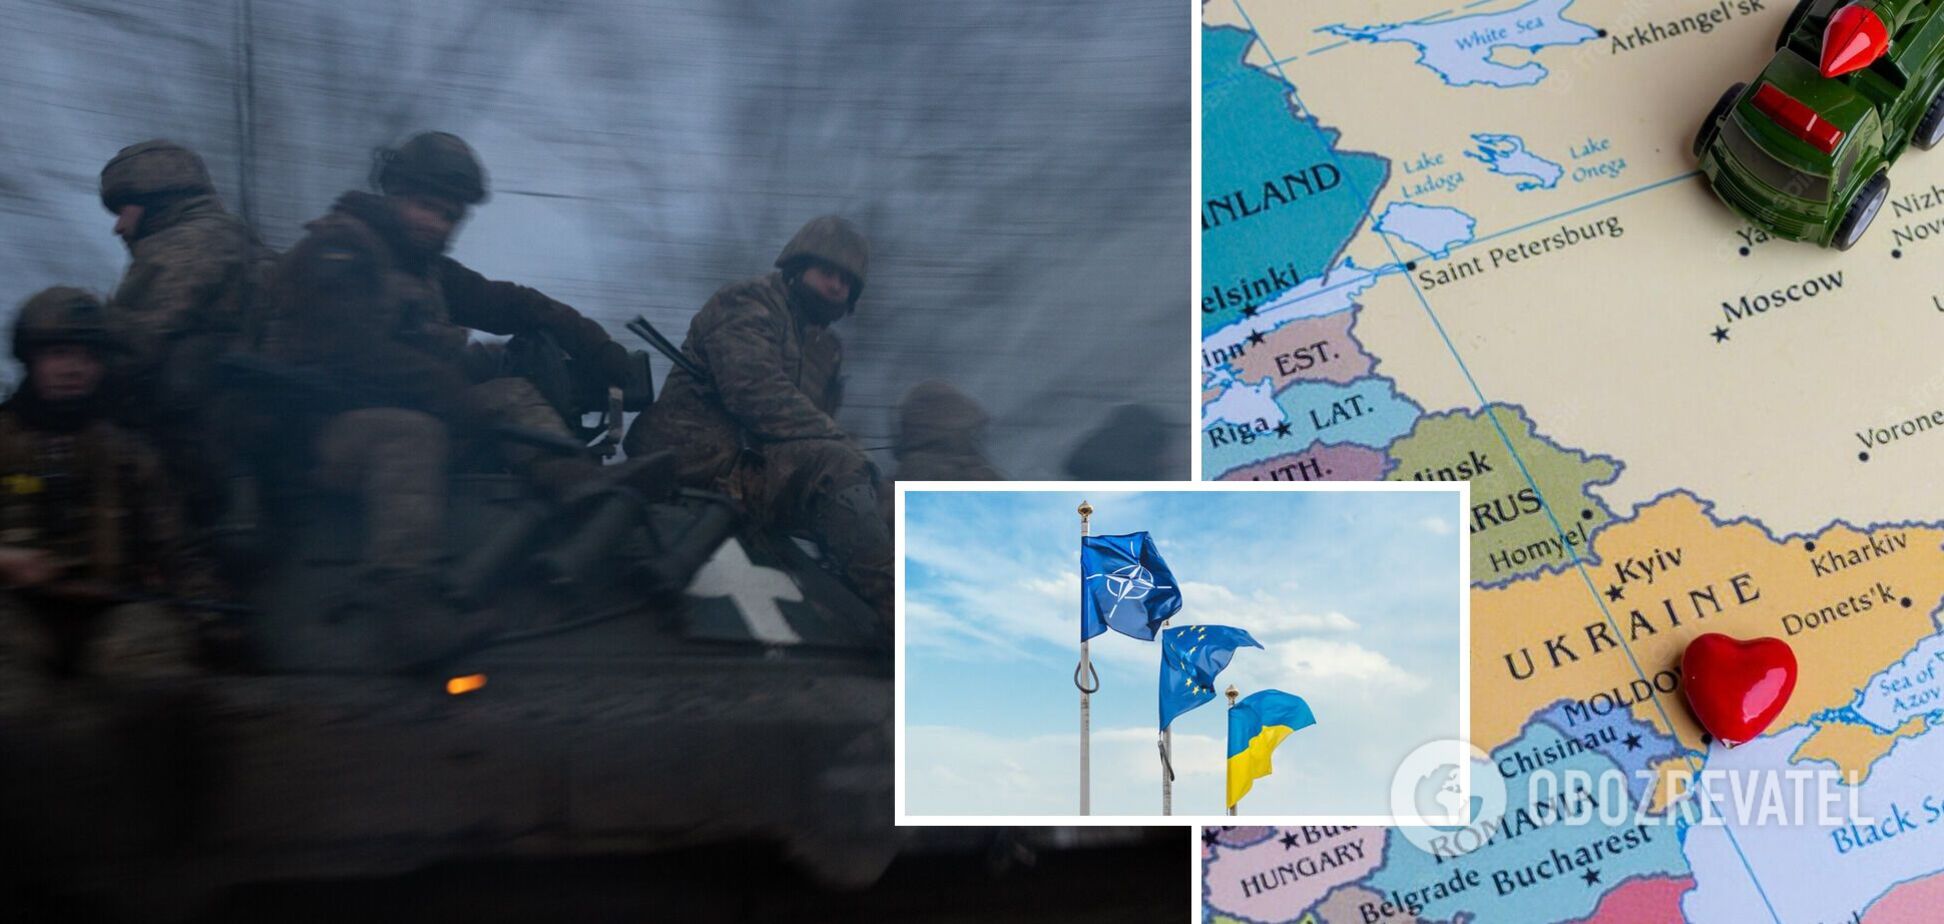 Кремль ведет войну на уничтожение. Как сохранить Украину?